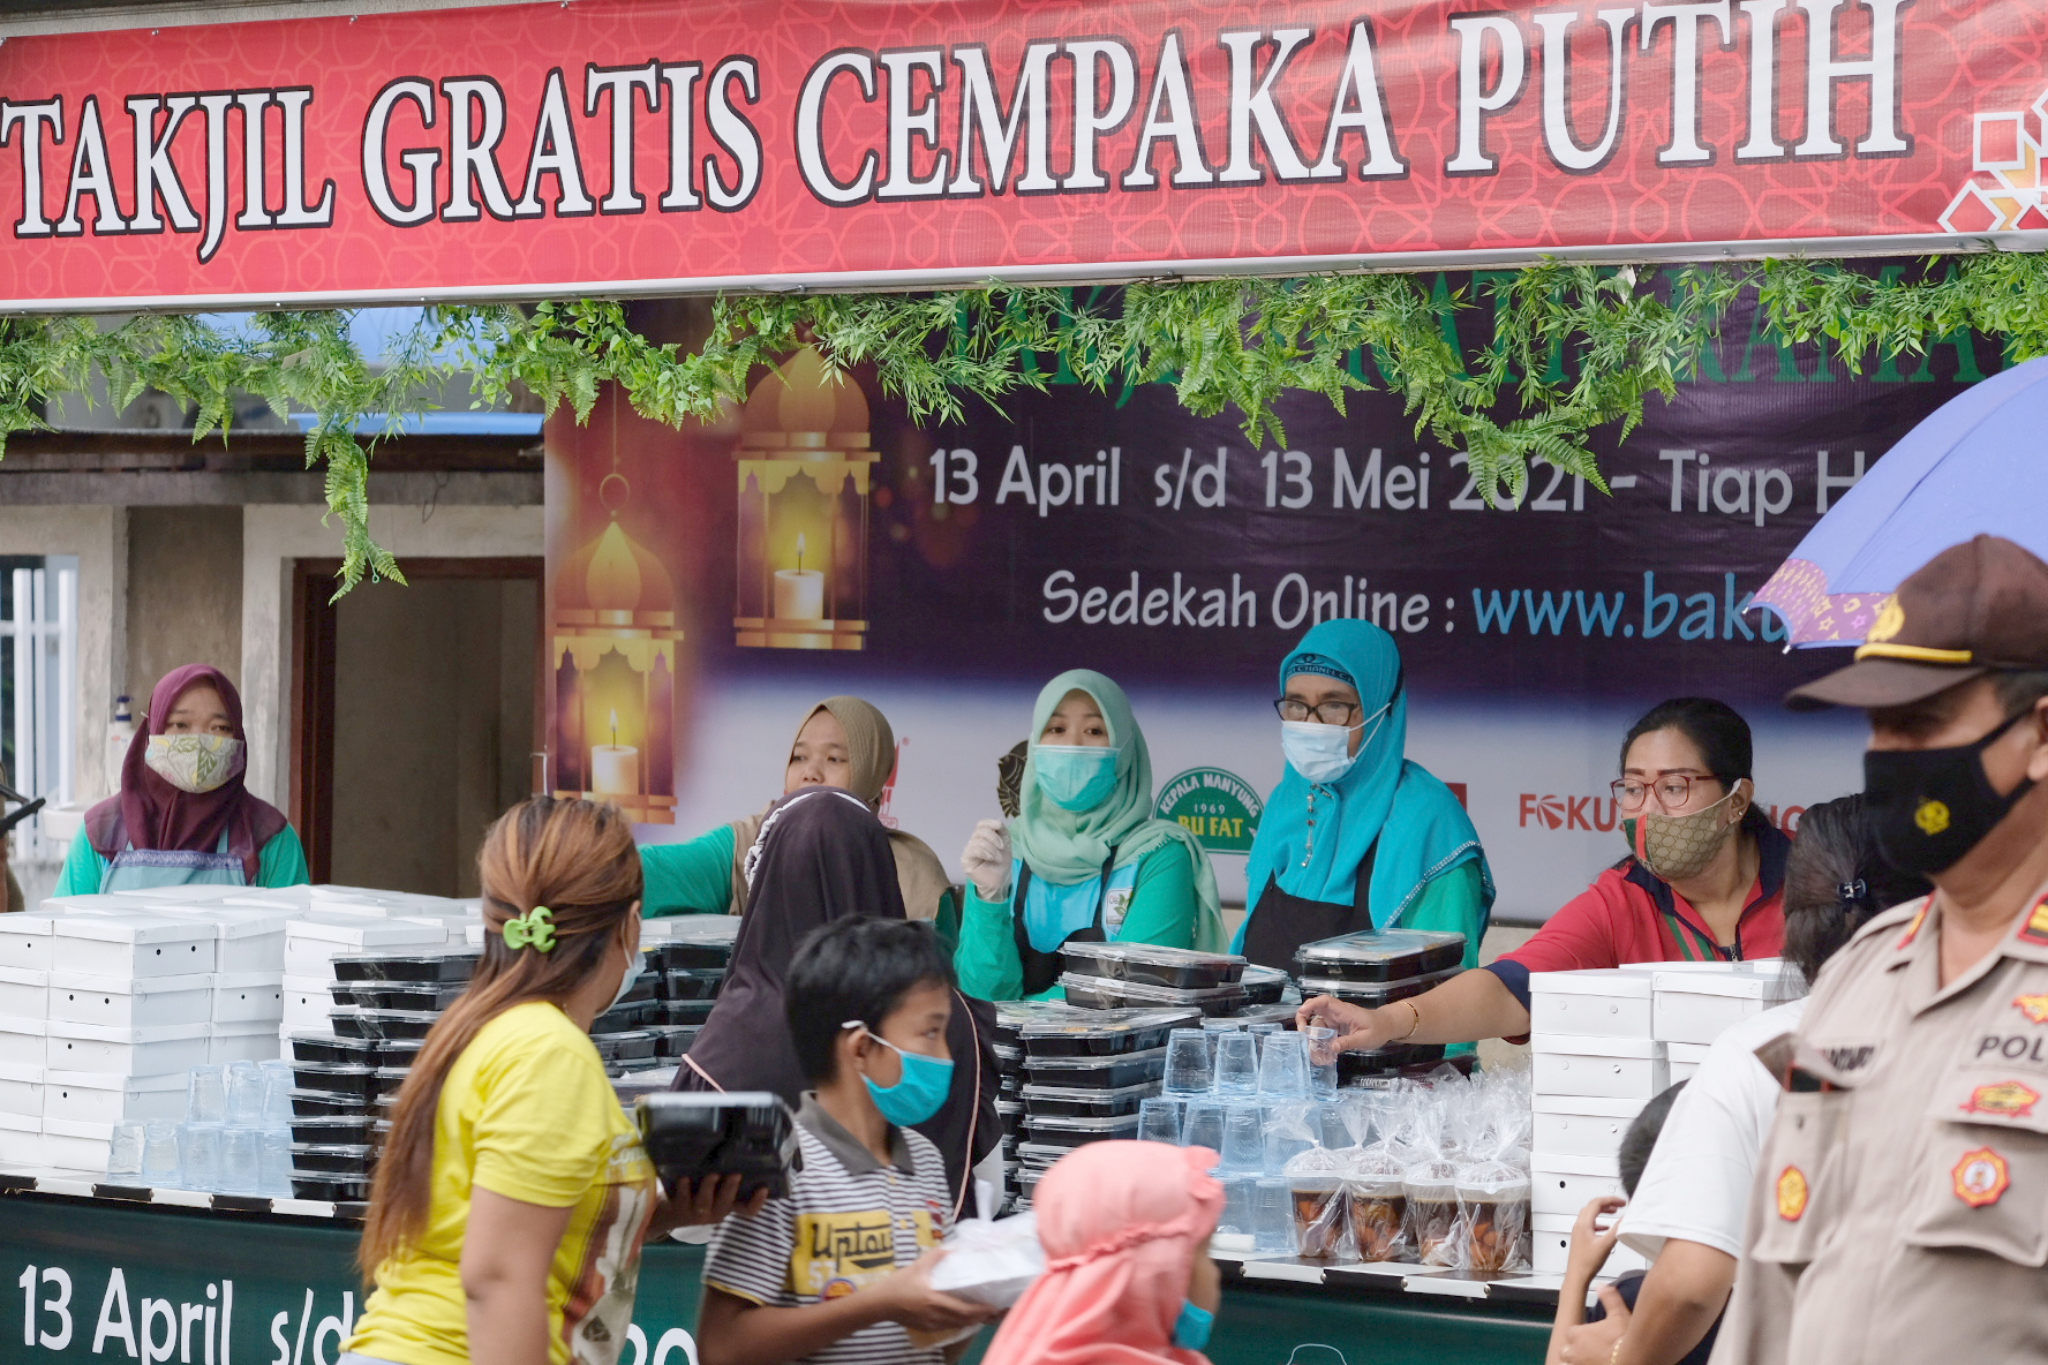 <p>Warga membawa kotakan takjil yang diberikan secara gratis di kawasan Jalan Cempaka Putih Tengah 21, Jakarta Pusat, Kamis, 15 April 2021. Foto: Ismail Pohan/TrenAsia</p>
